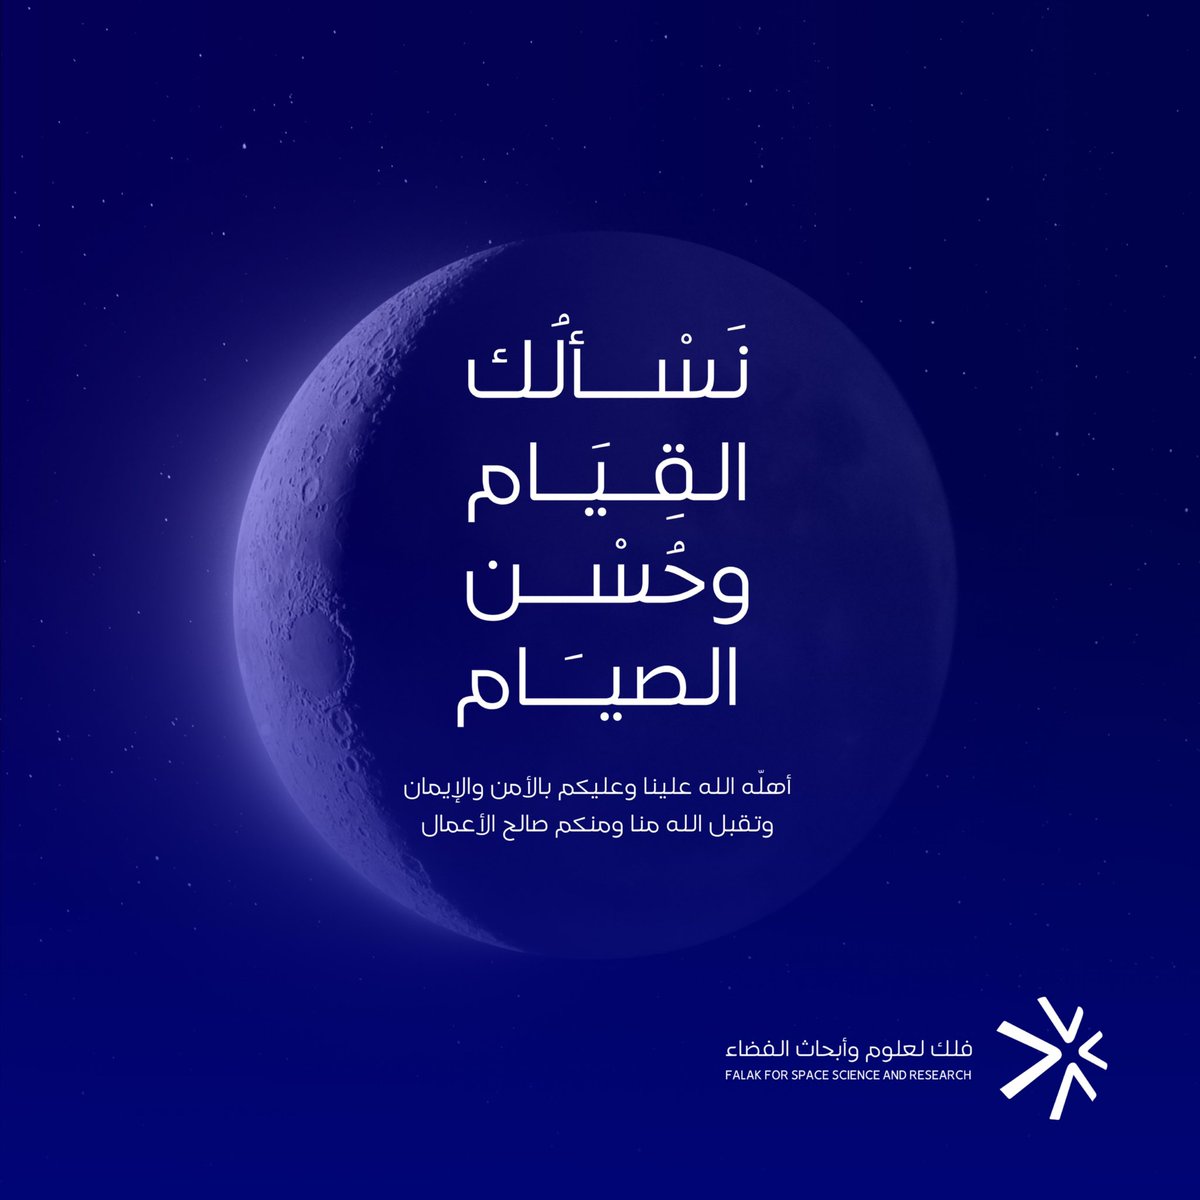 تهنئكم #فلك_لعلوم_وأبحاث_الفضاء بقدوم الشهر الكريم، كل عام وأنتم بخير، وأعاده الله علينا وعليكم بالخير واليمن والمسرات. #رمضان